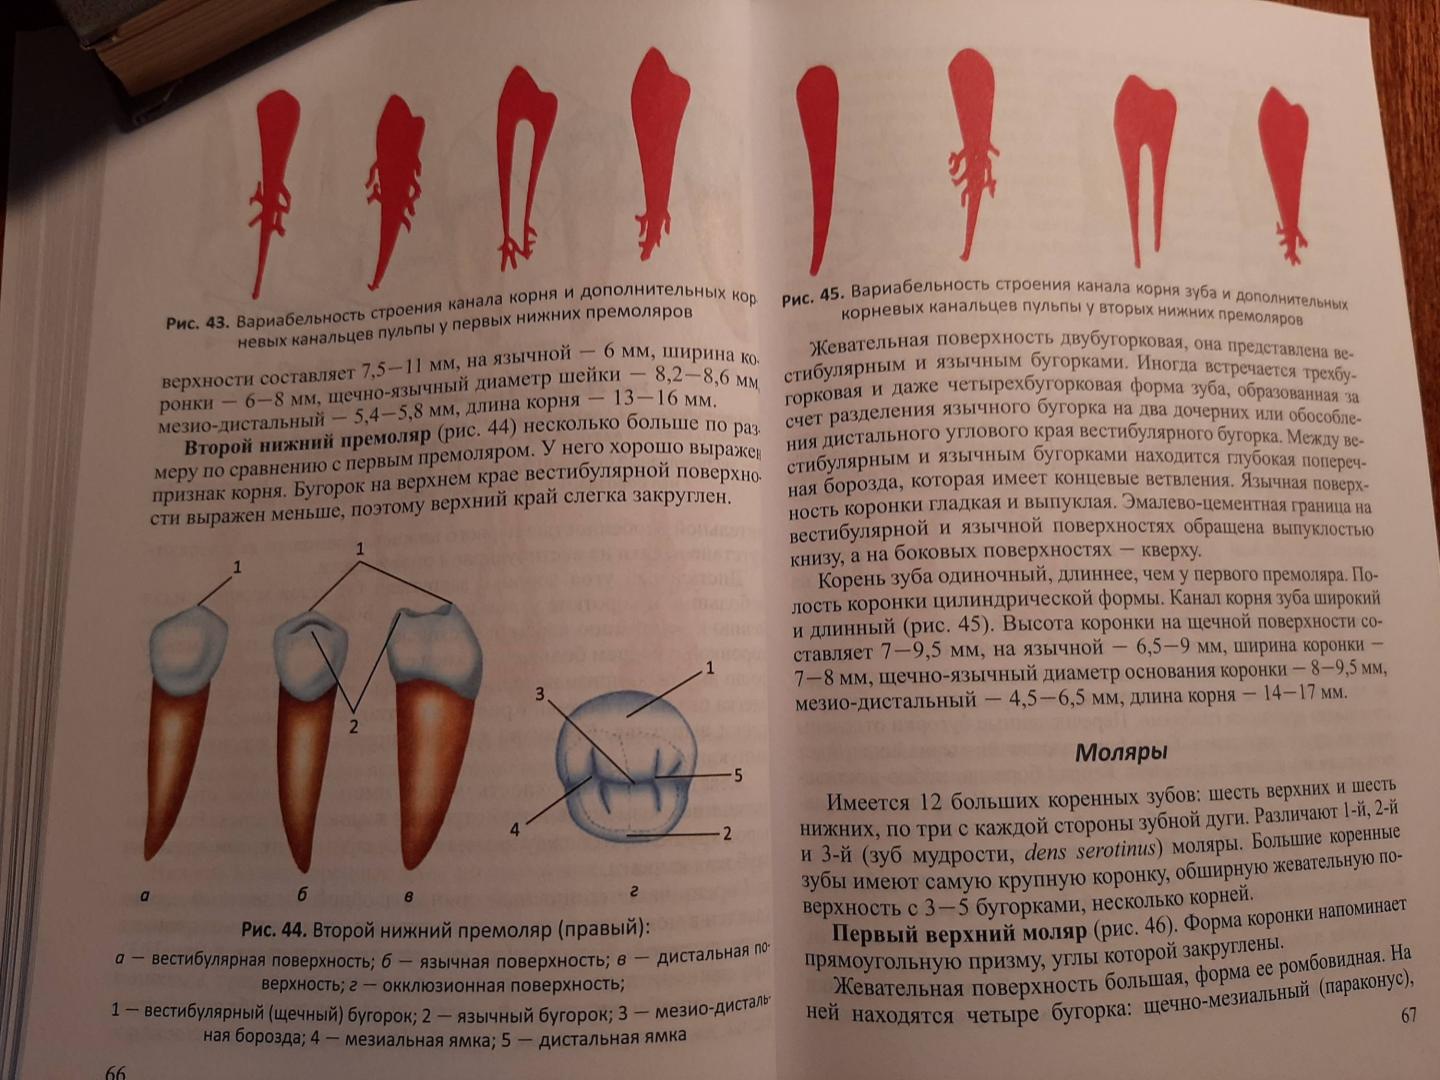 Иллюстрация 10 из 17 для Функционально-клиническая анатомия зубочелюстной системы. Учебное пособие для медицинских вузов - Гайворонский, Гайворонская | Лабиринт - книги. Источник: Лабиринт